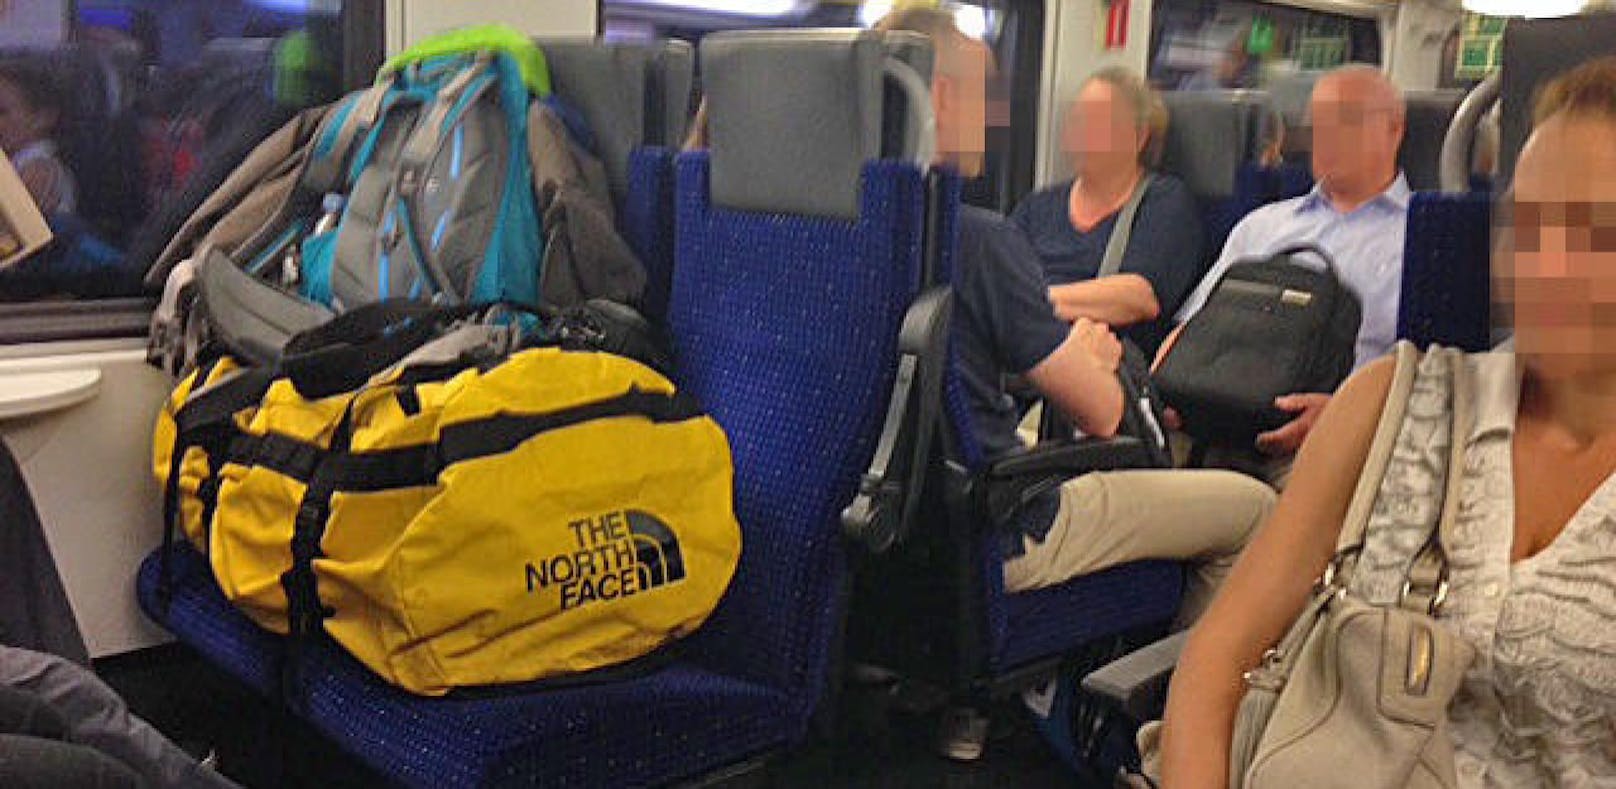 Passagiere, die freie Sitzplätze mit Gepäck blockieren, sorgen im Zug oft für Ärger.